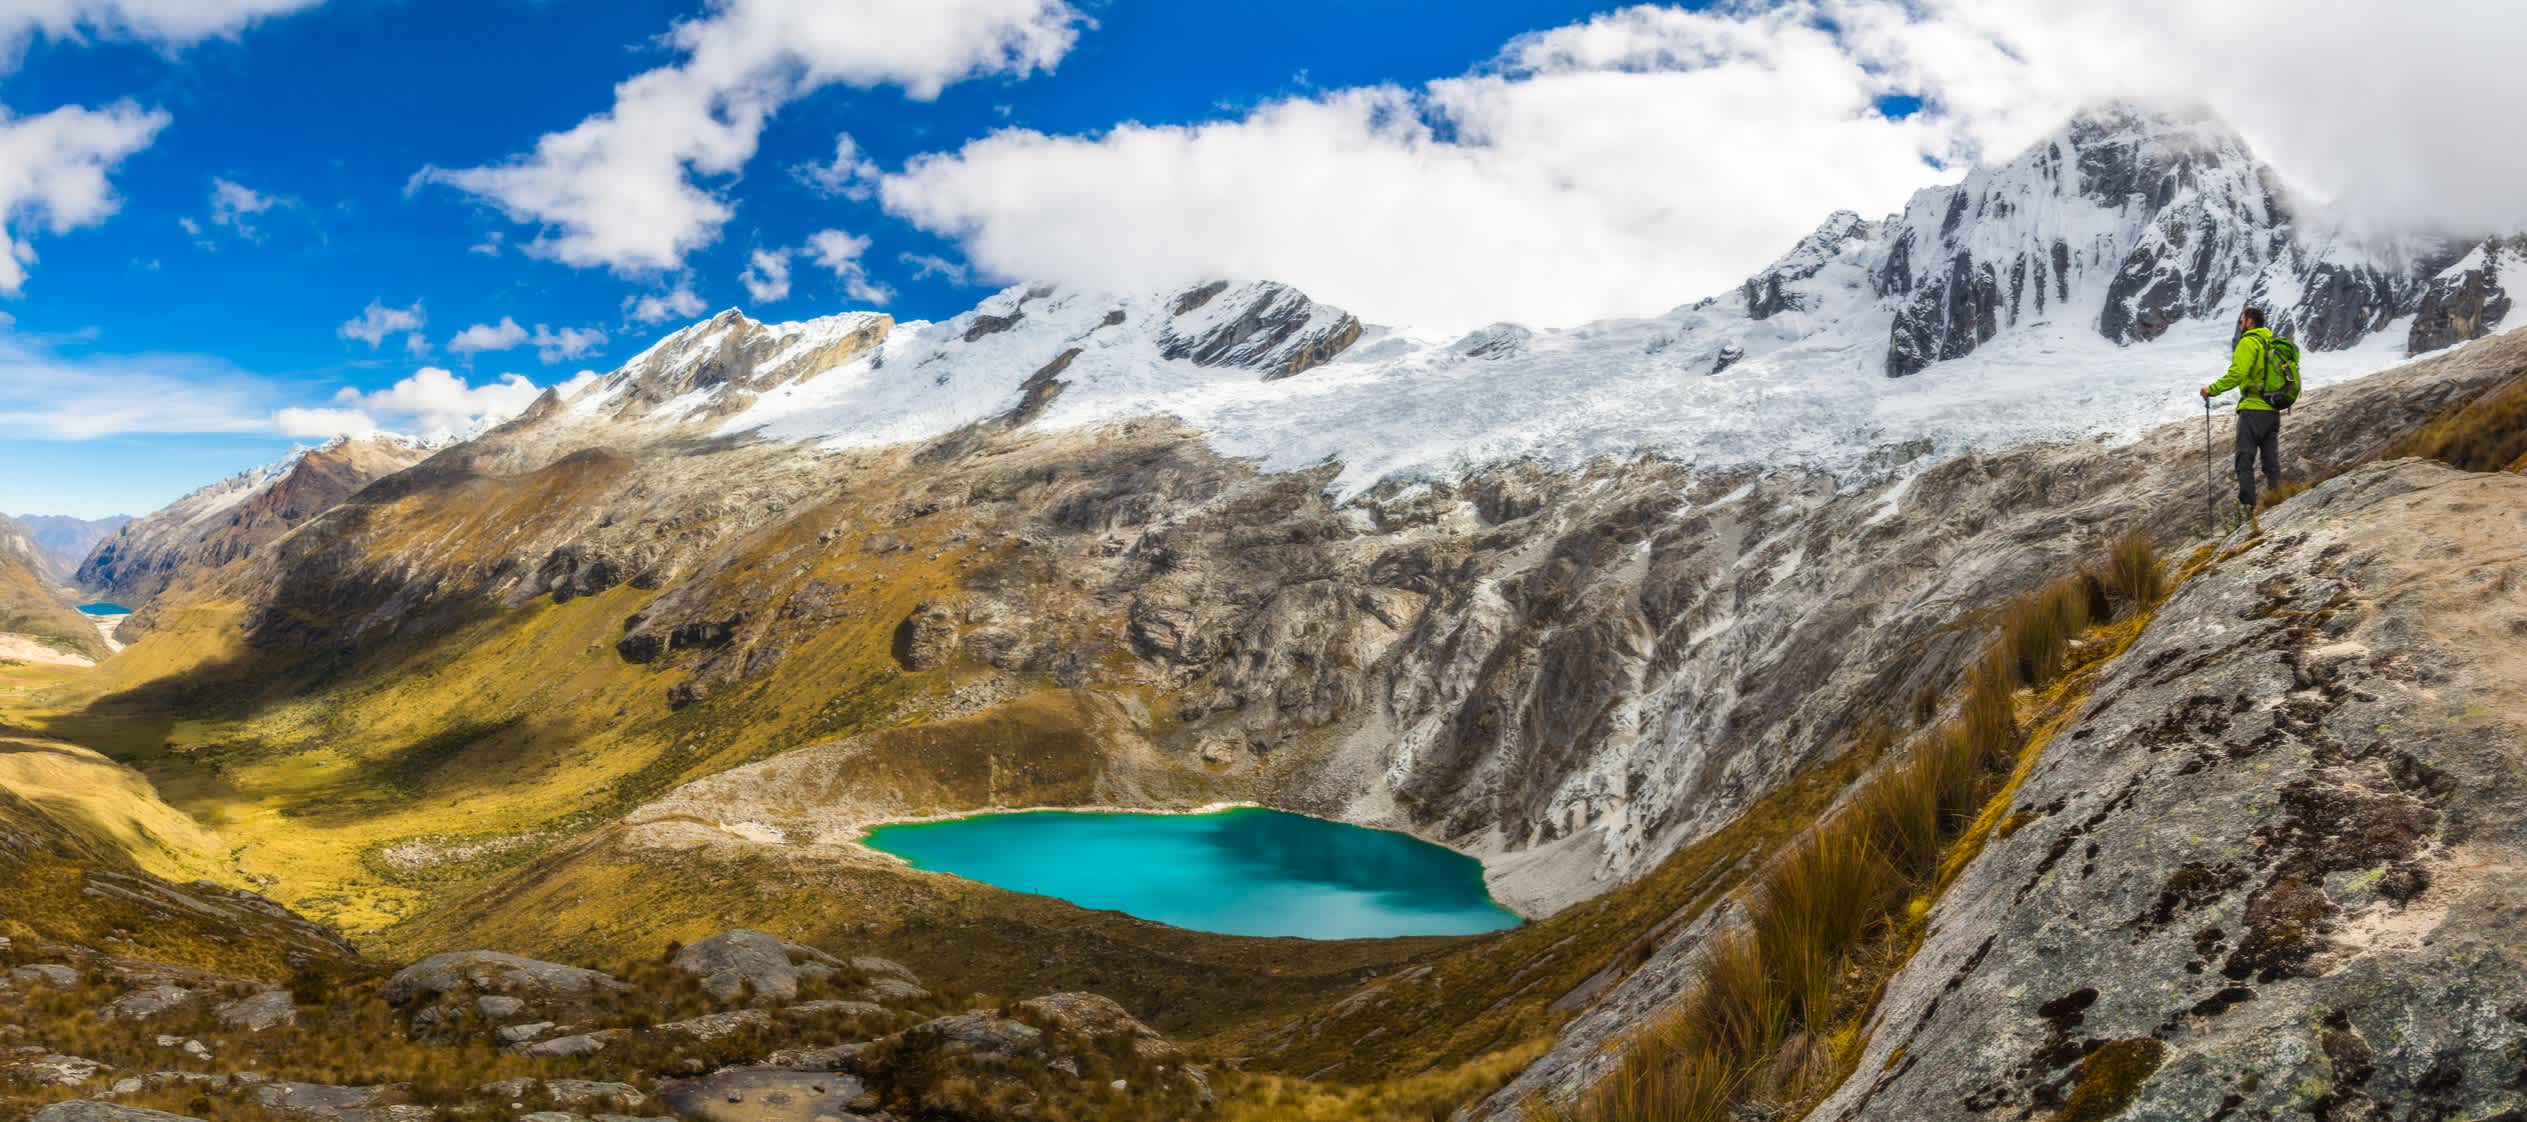 Männlicher Abenteurer mit einem Rucksack auf einem Hügel auf der rechten Seite mit Blick auf die wunderschöne und weite Tallandschaft mit einem türkisblauen Aquarellsee in Cordillera Blanca, Peruanische Berge, Südamerika